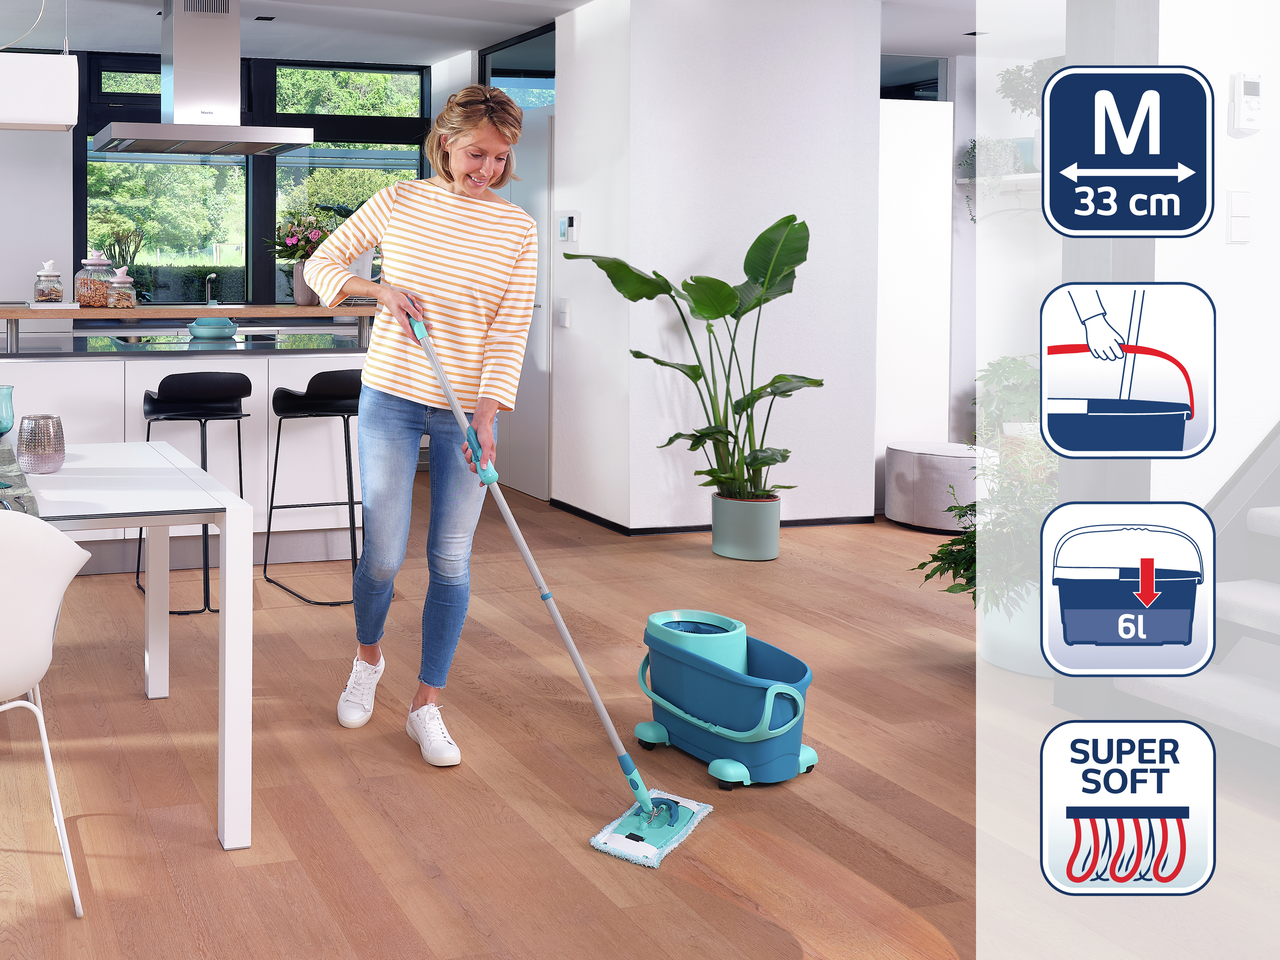 Zestaw mop CLEAN TWIST M Ergo na kółkach (52121) - Opinie i atrakcyjne ceny  na Ceneo.pl